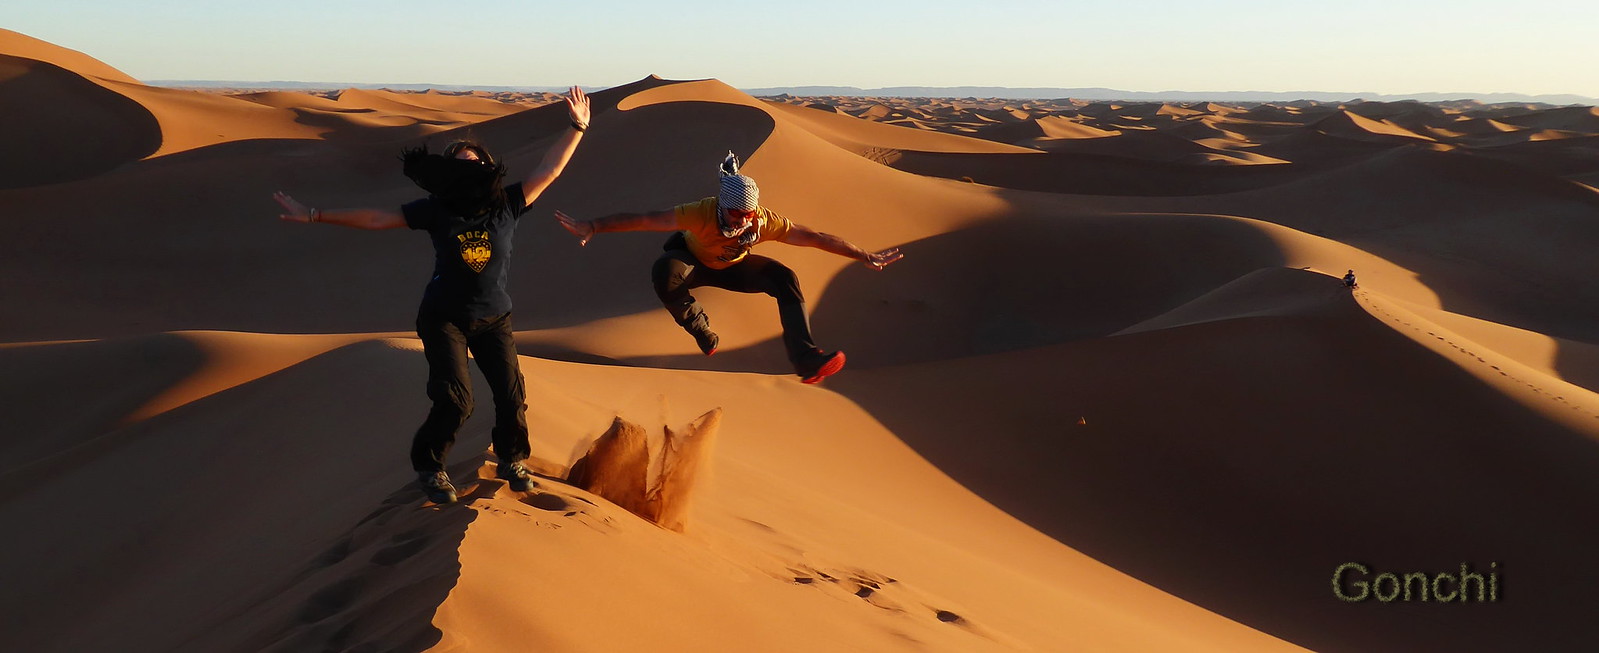 MARRUECOS SORPRENDE - Blogs de Marruecos - El Sahara. Desierto de Erg Chegaga (2)